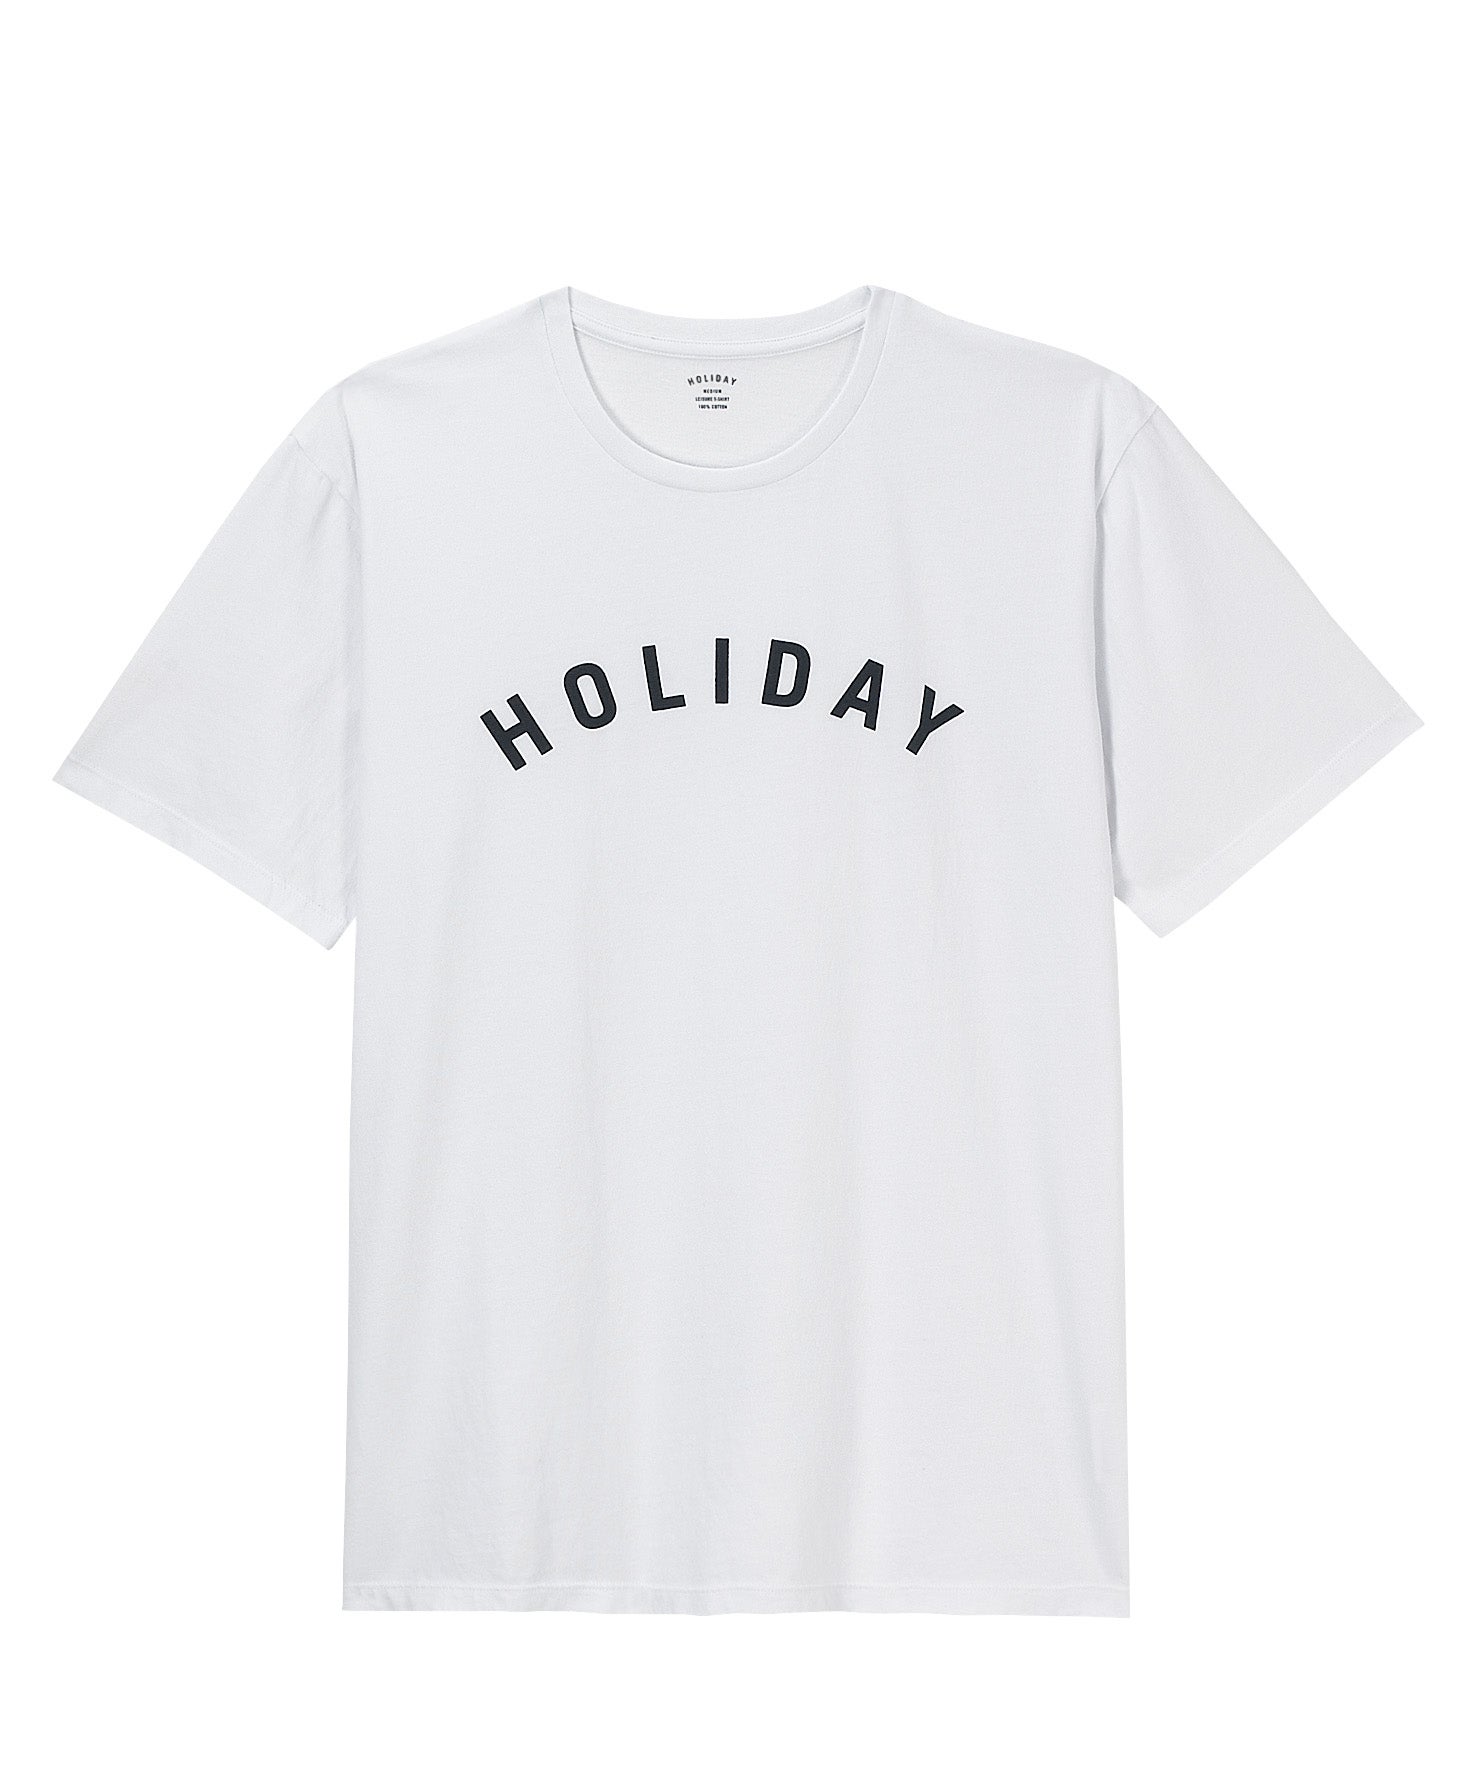 T-shirt, ?50, Holiday at brownsfashion.com